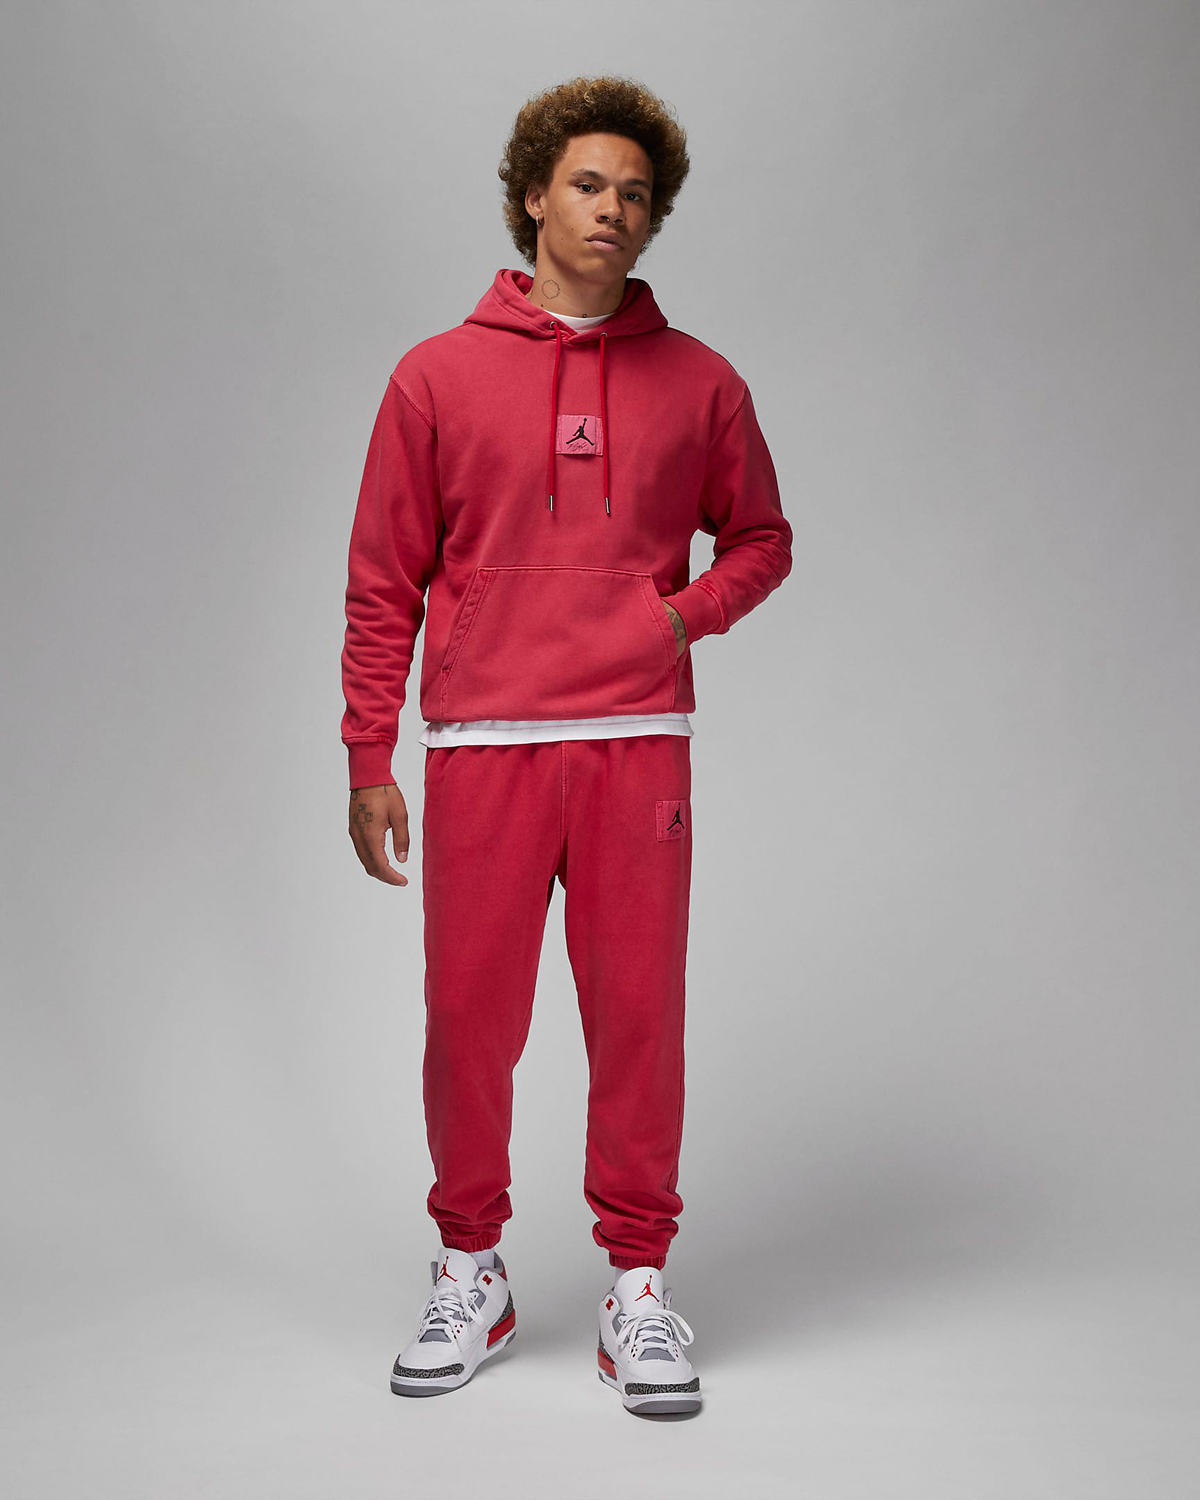 Jordan-Essentials-Washed-Hoodie-Pants-Cardinal-Red